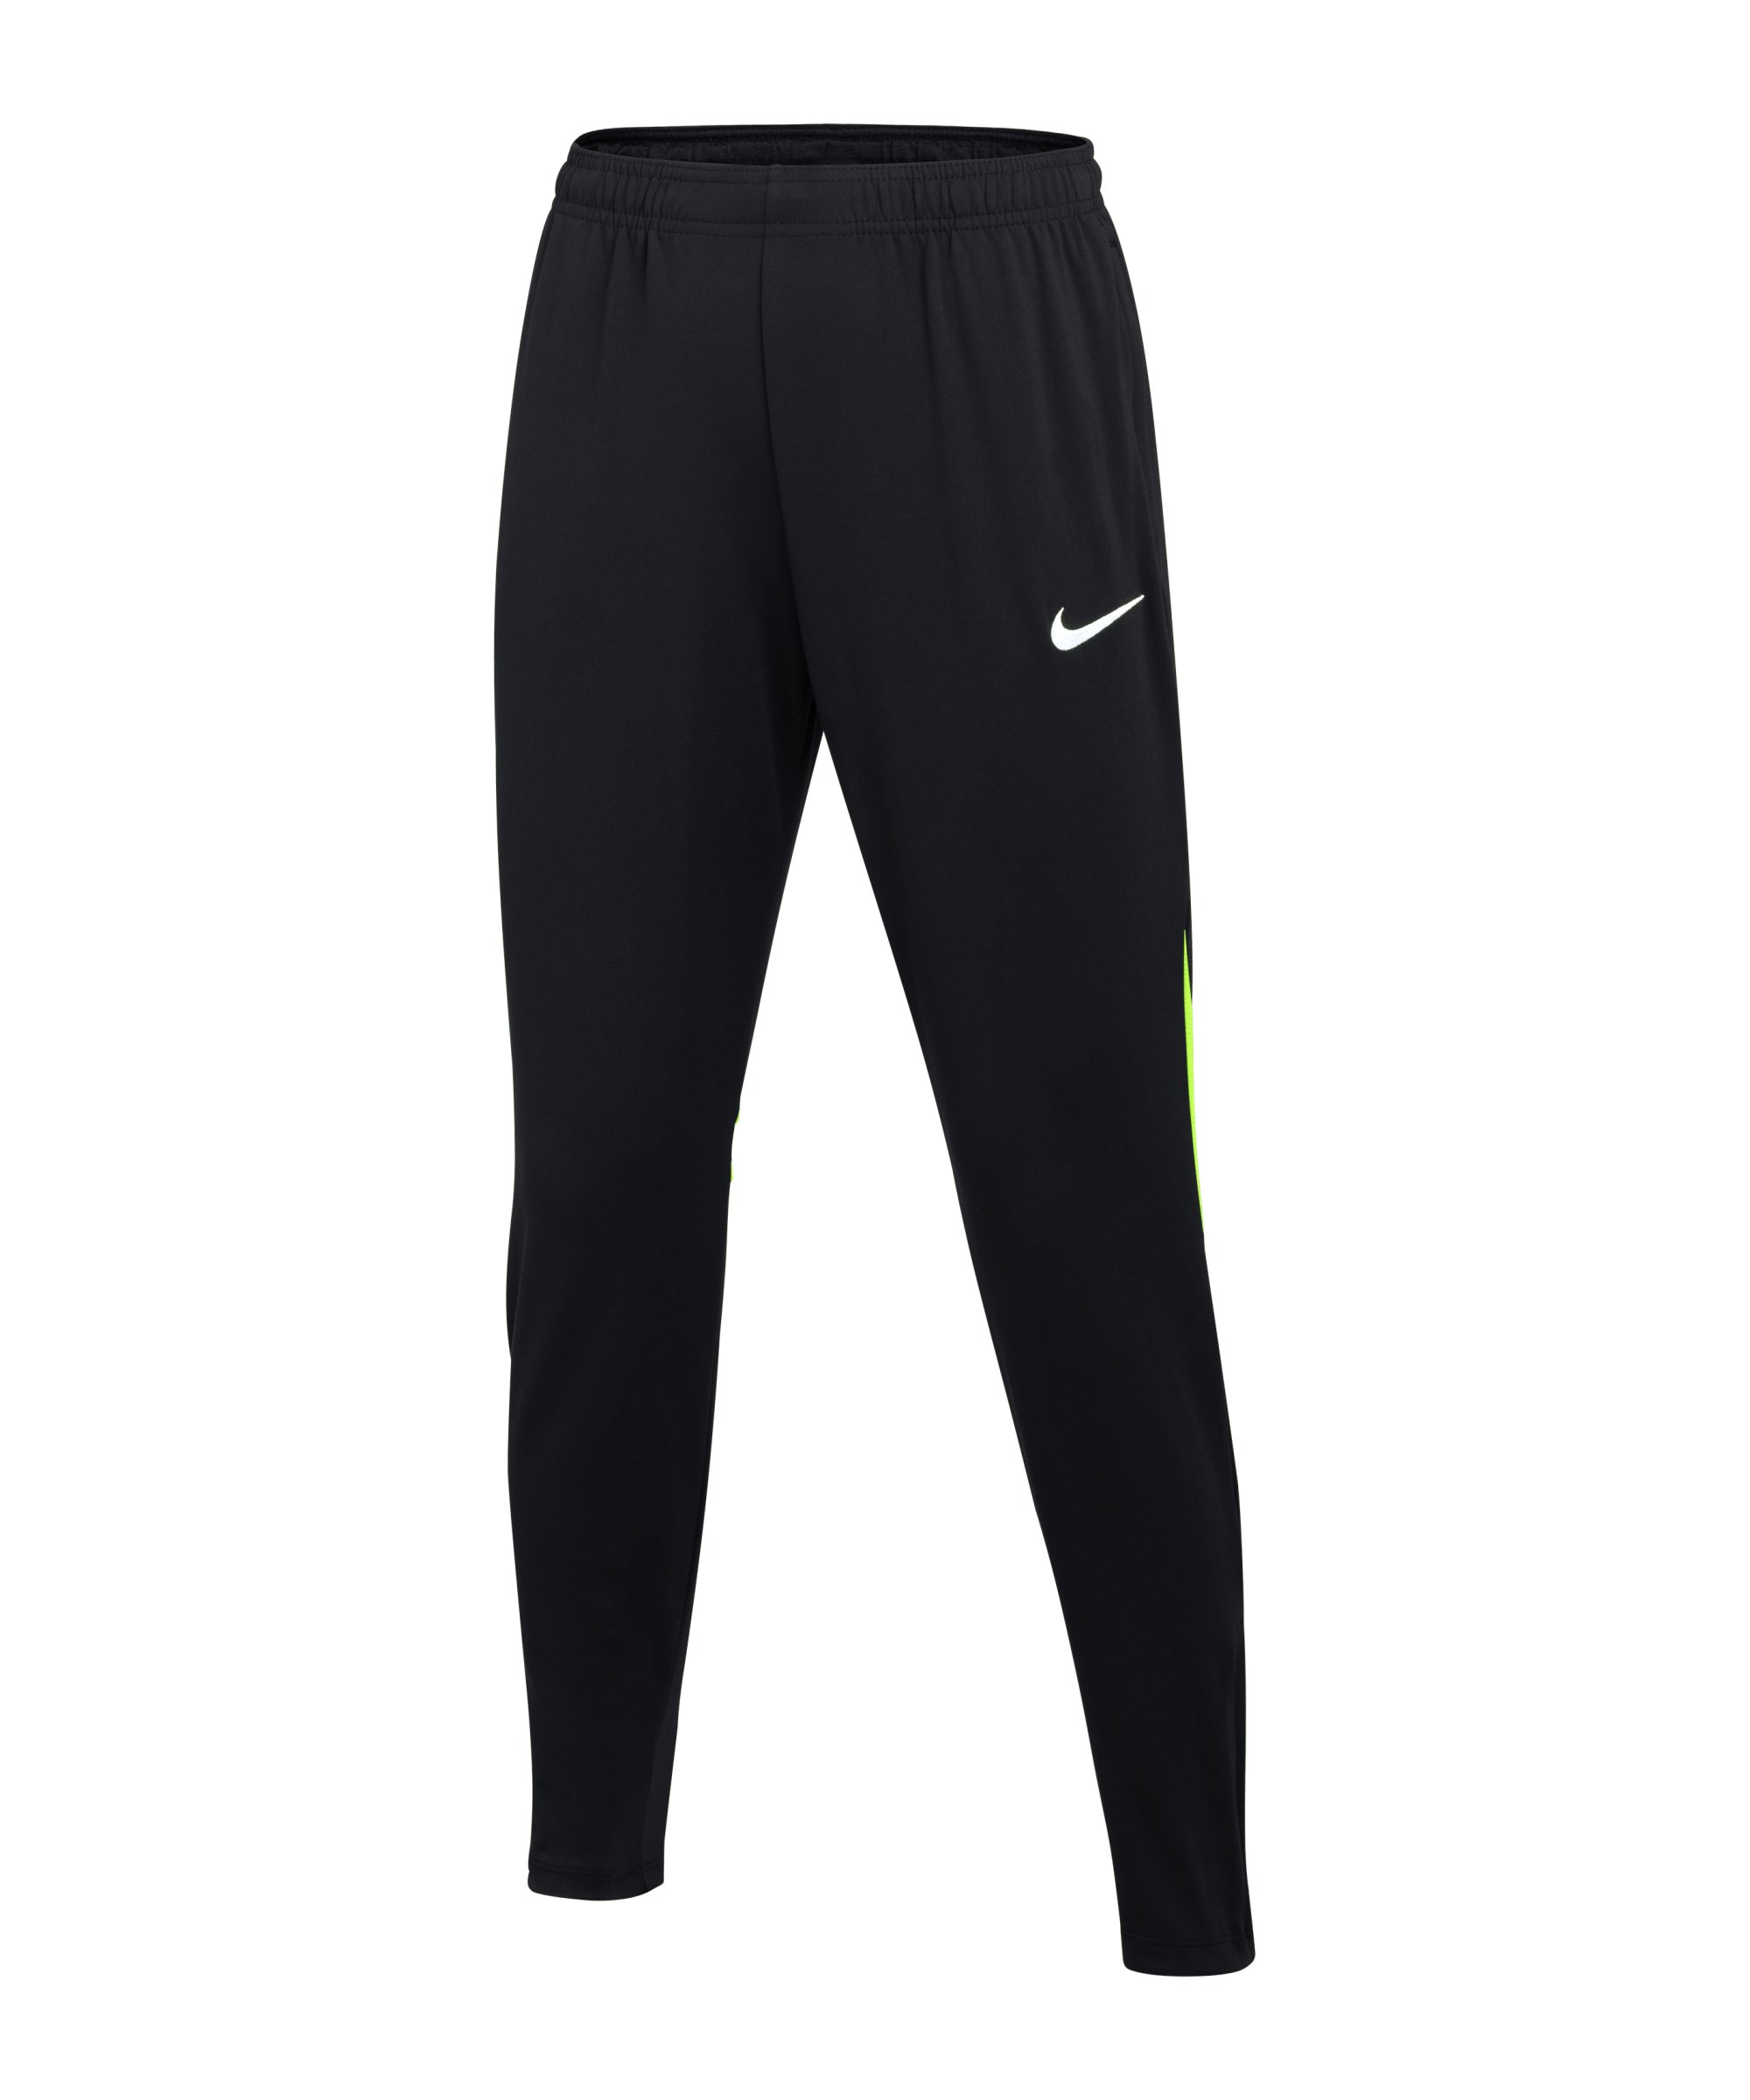 Nike Academy Pro Trainingshose Damen Schwarz F010 - schwarz